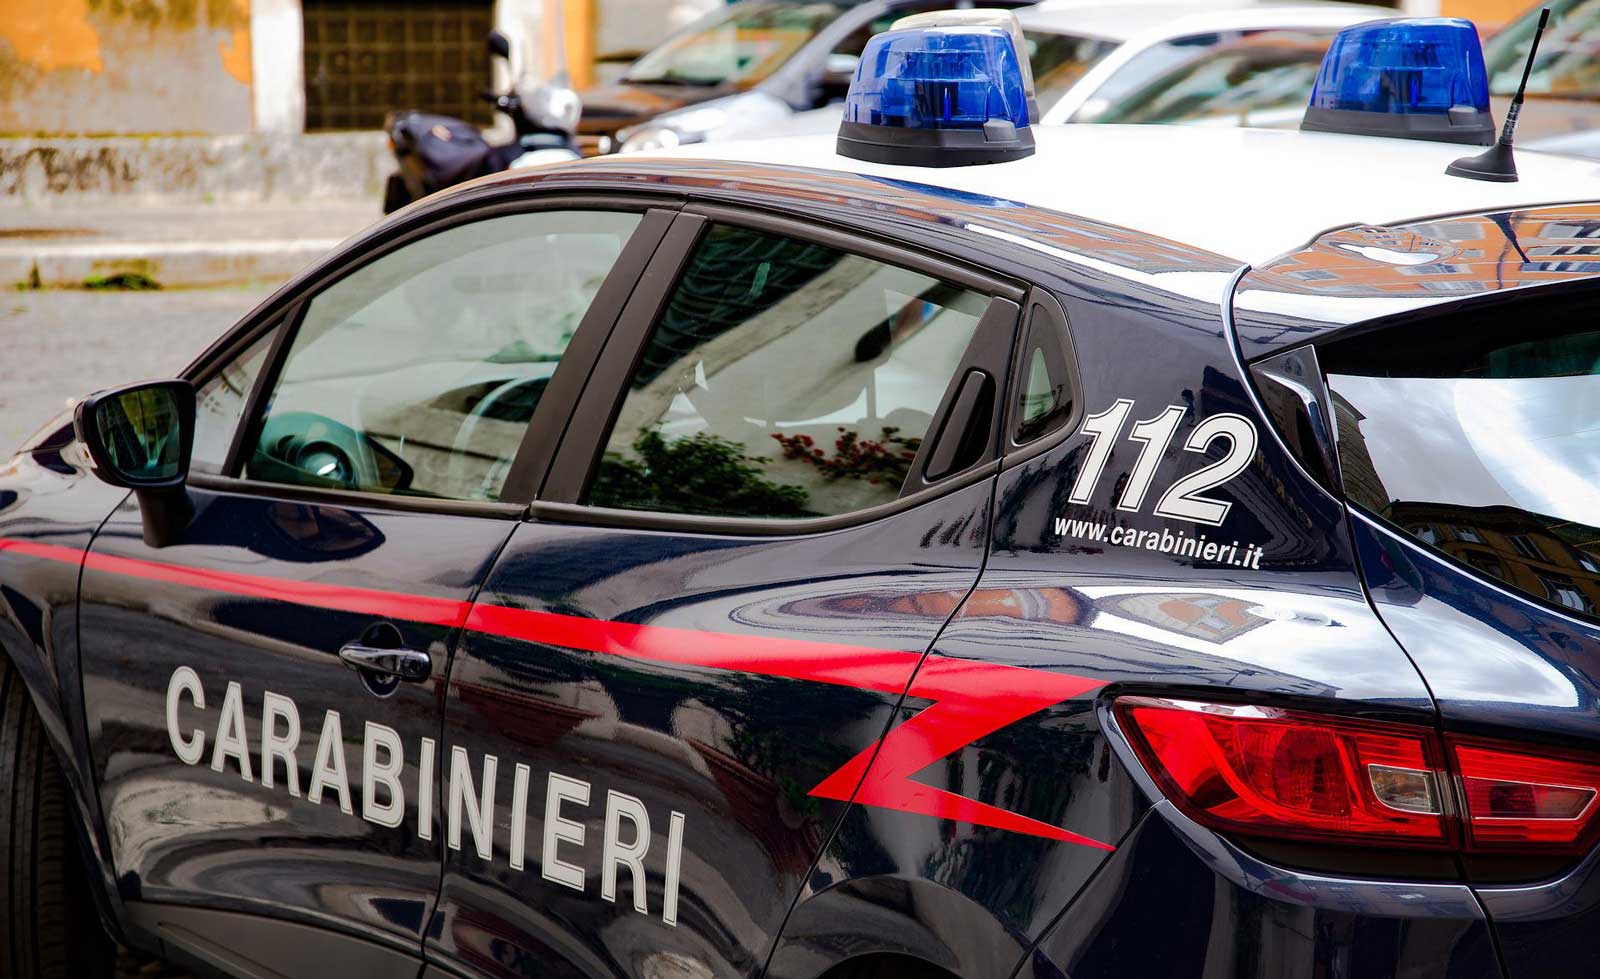 Carabinieri intervenuti per donna trovata morta